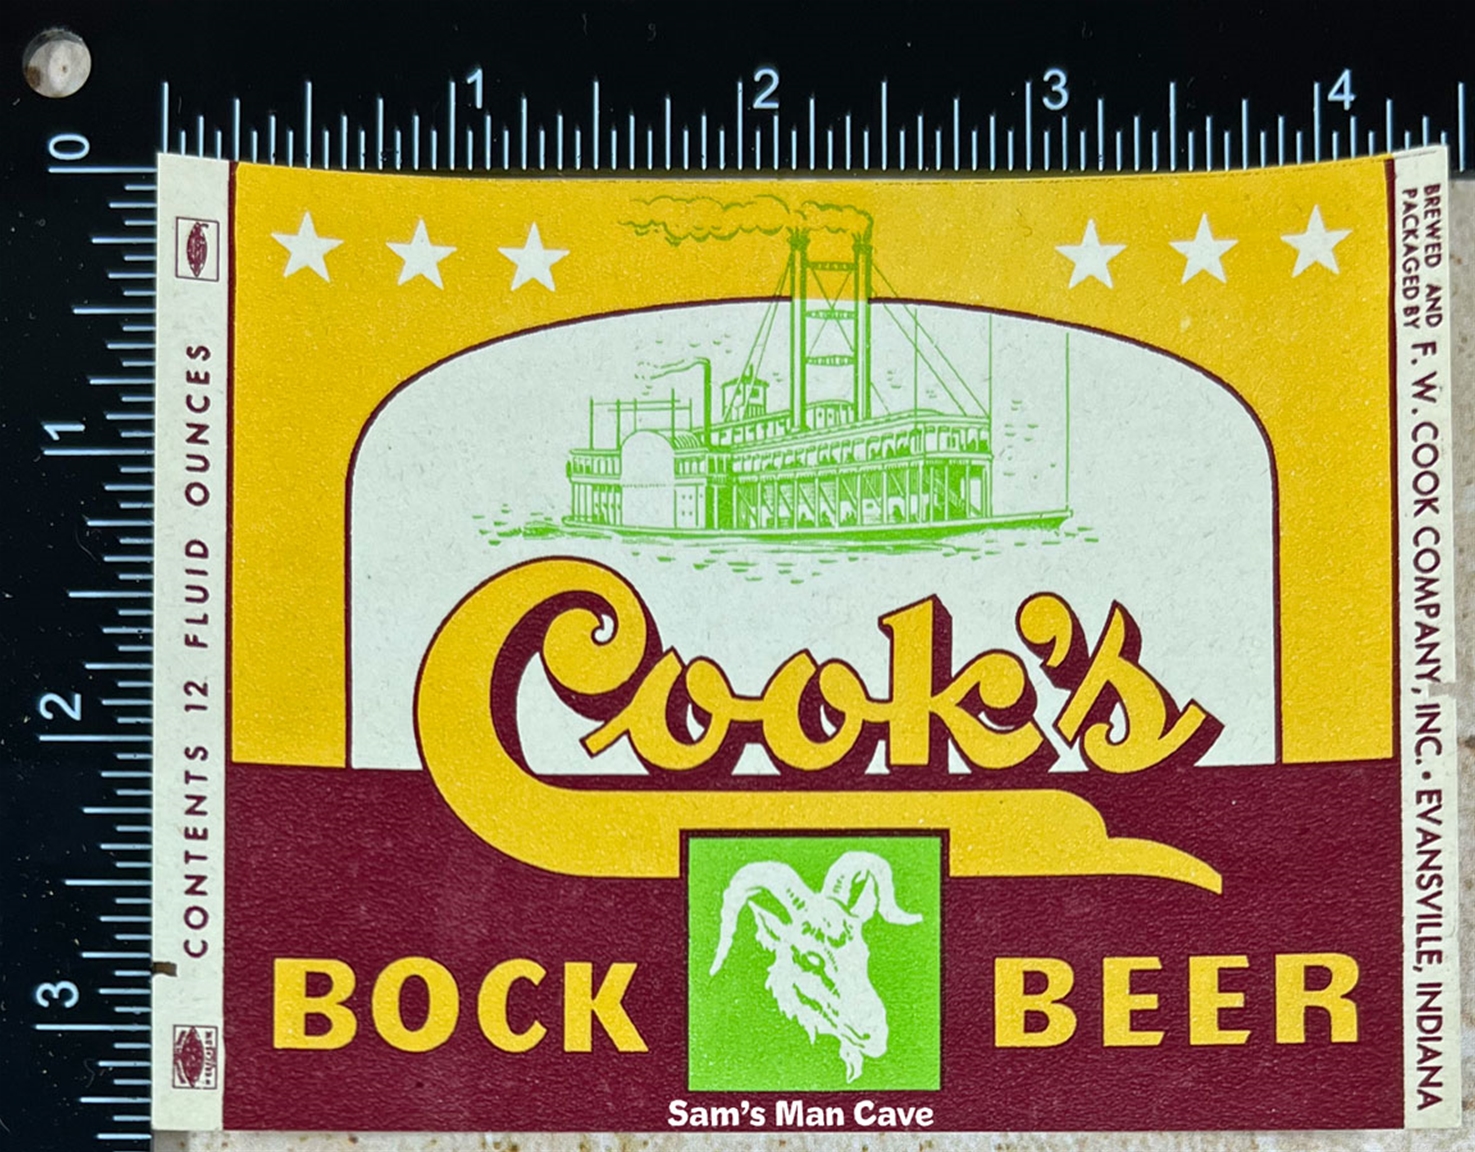 Cook's Bock Beer Label